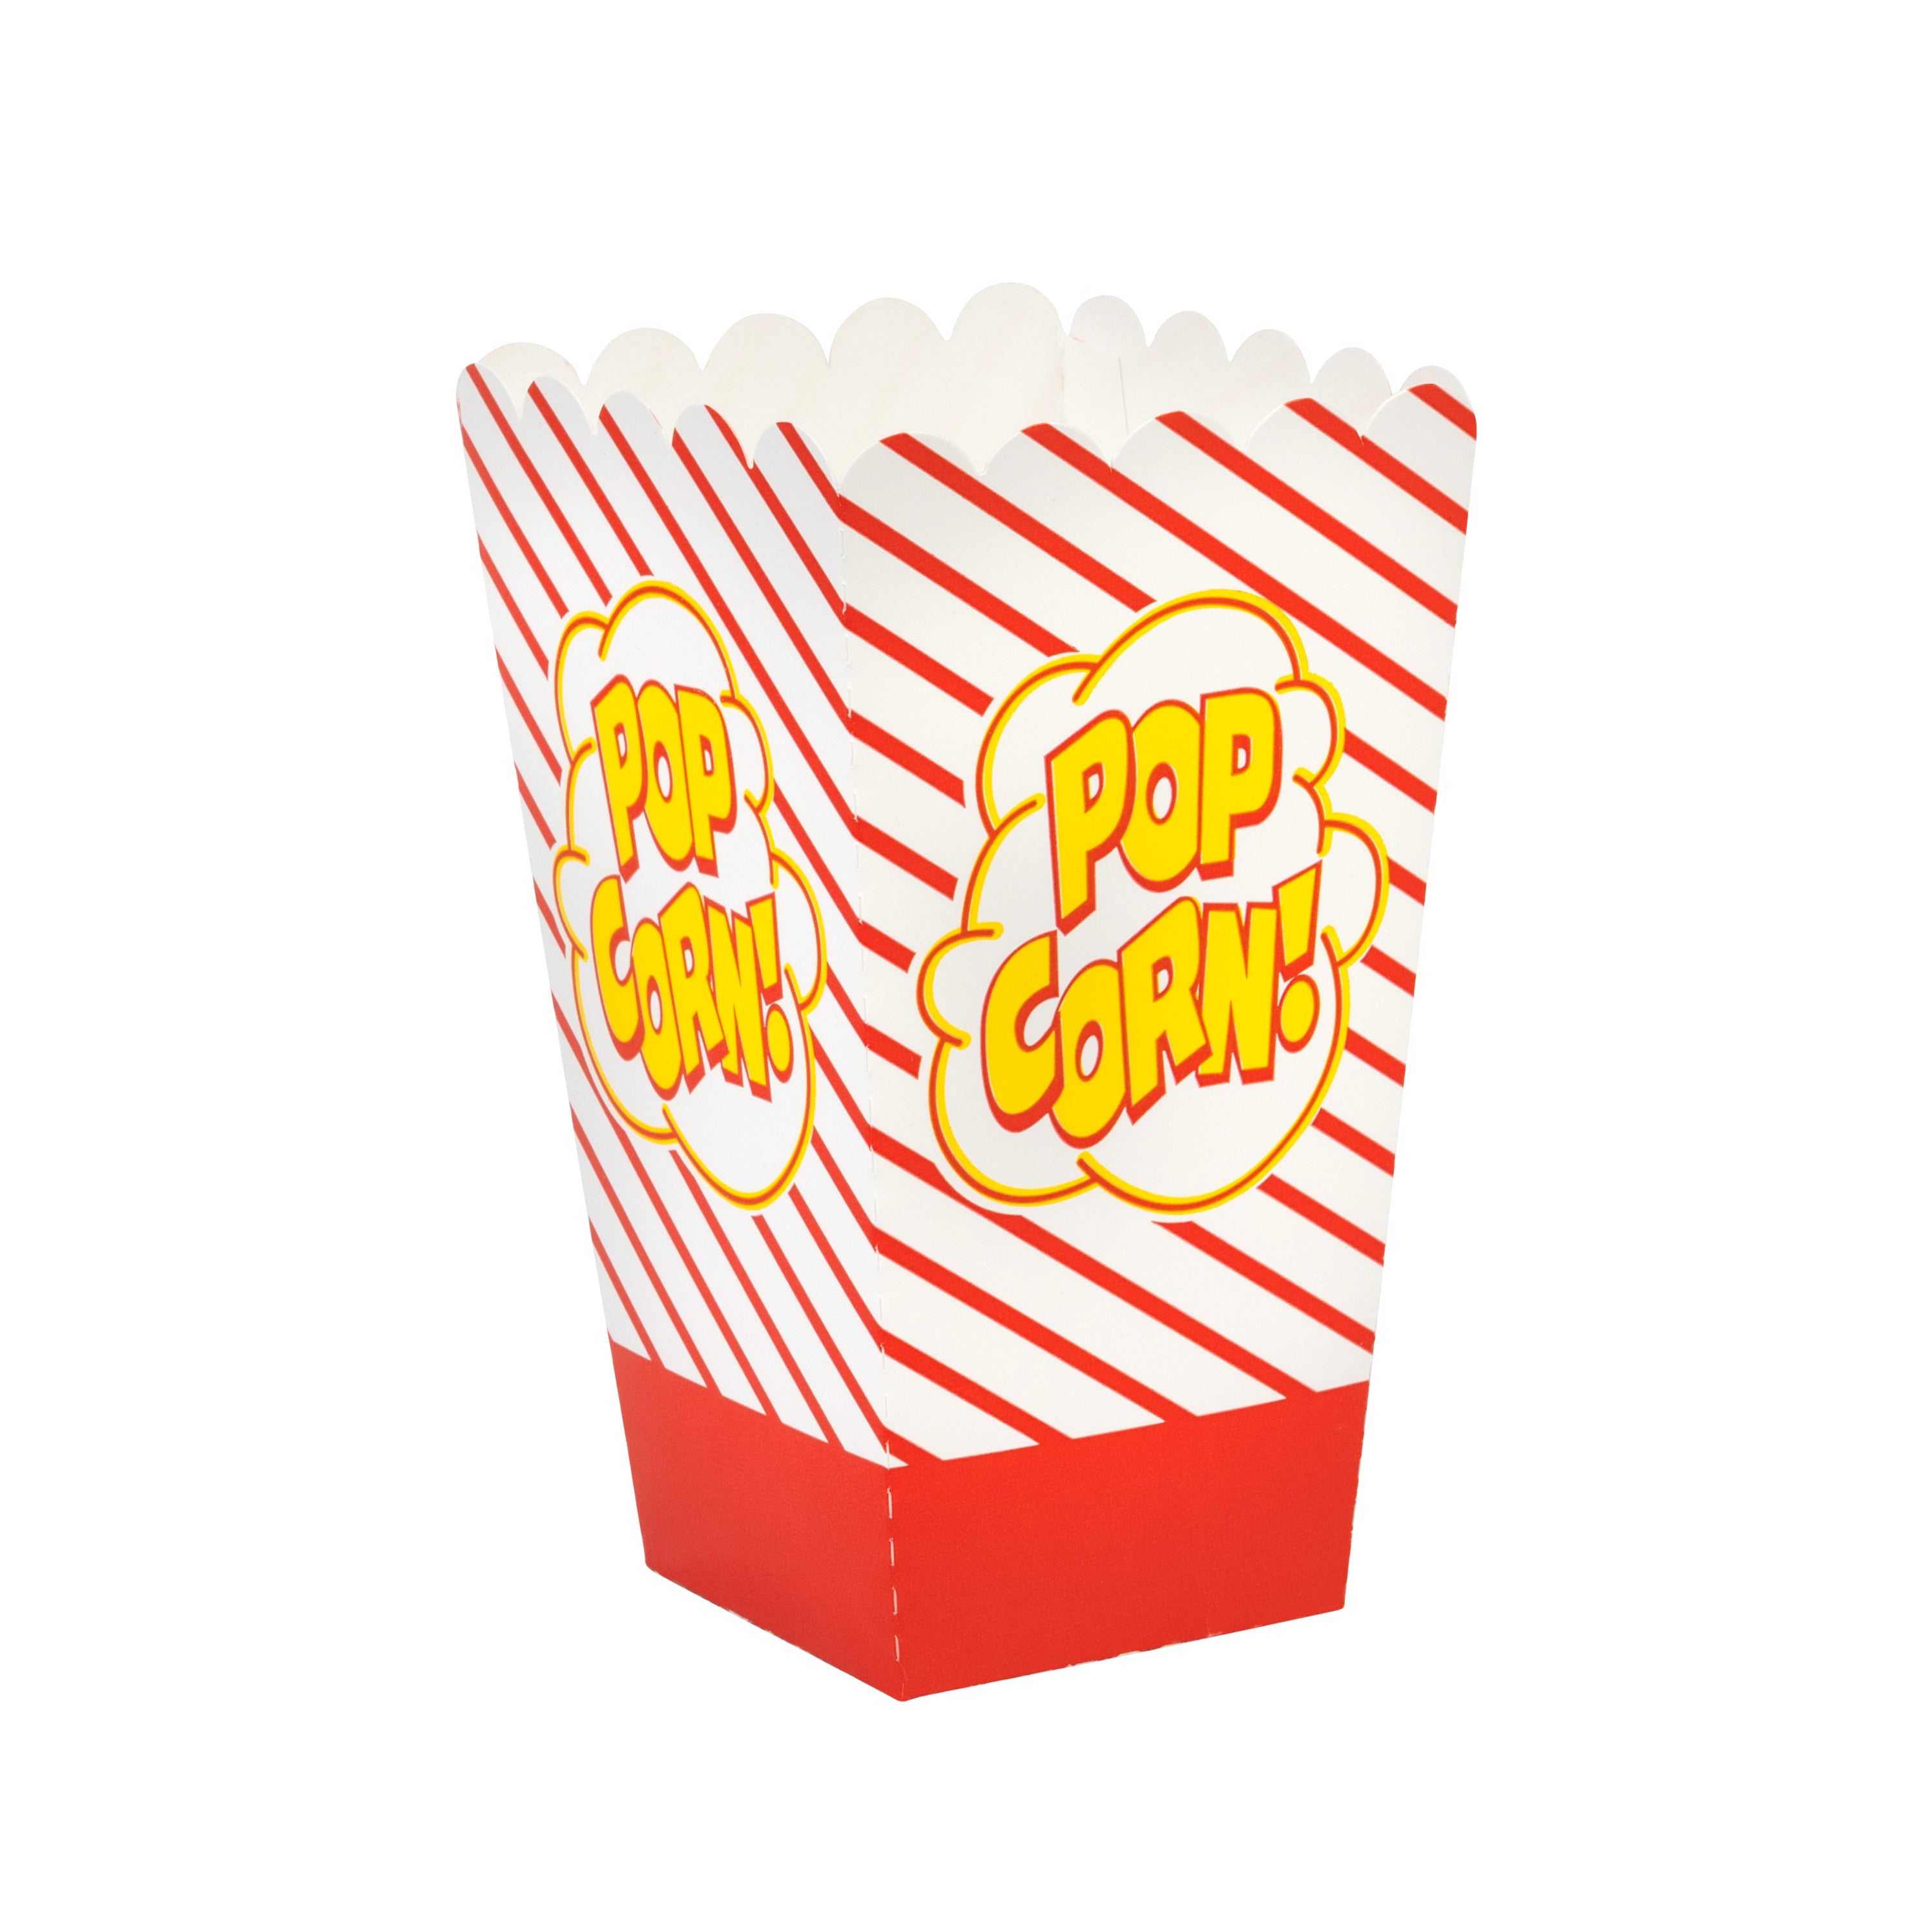 Gold Medal 0.8oz popcorn boxes